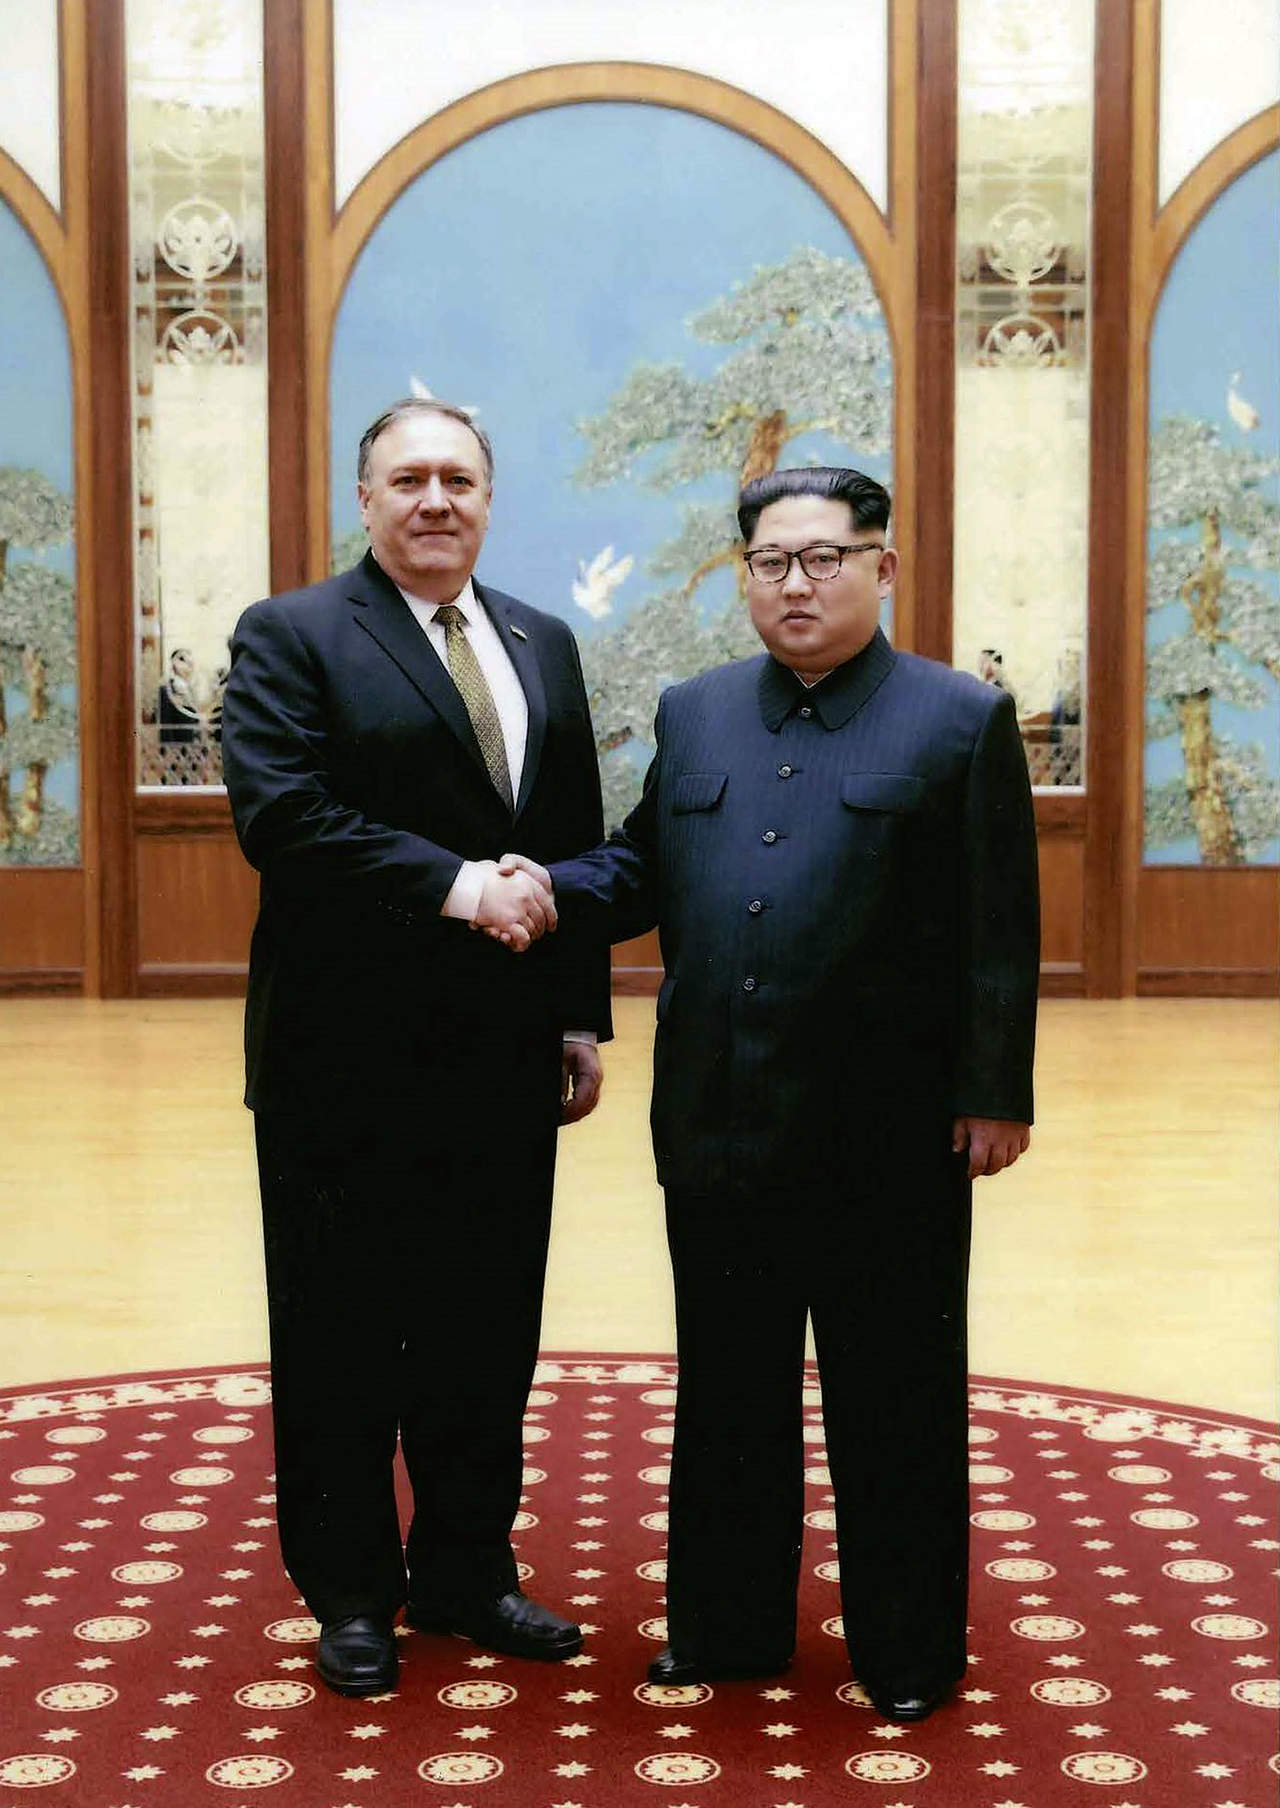 El presidente reveló que, cuando Pompeo viajó a Corea del Norte, 'no tenía previsto reunirse con Kim Jong-un', pero 'mientras estaba allí se hicieron los preparativos para que se dijeran hola'. (ARCHIVO)